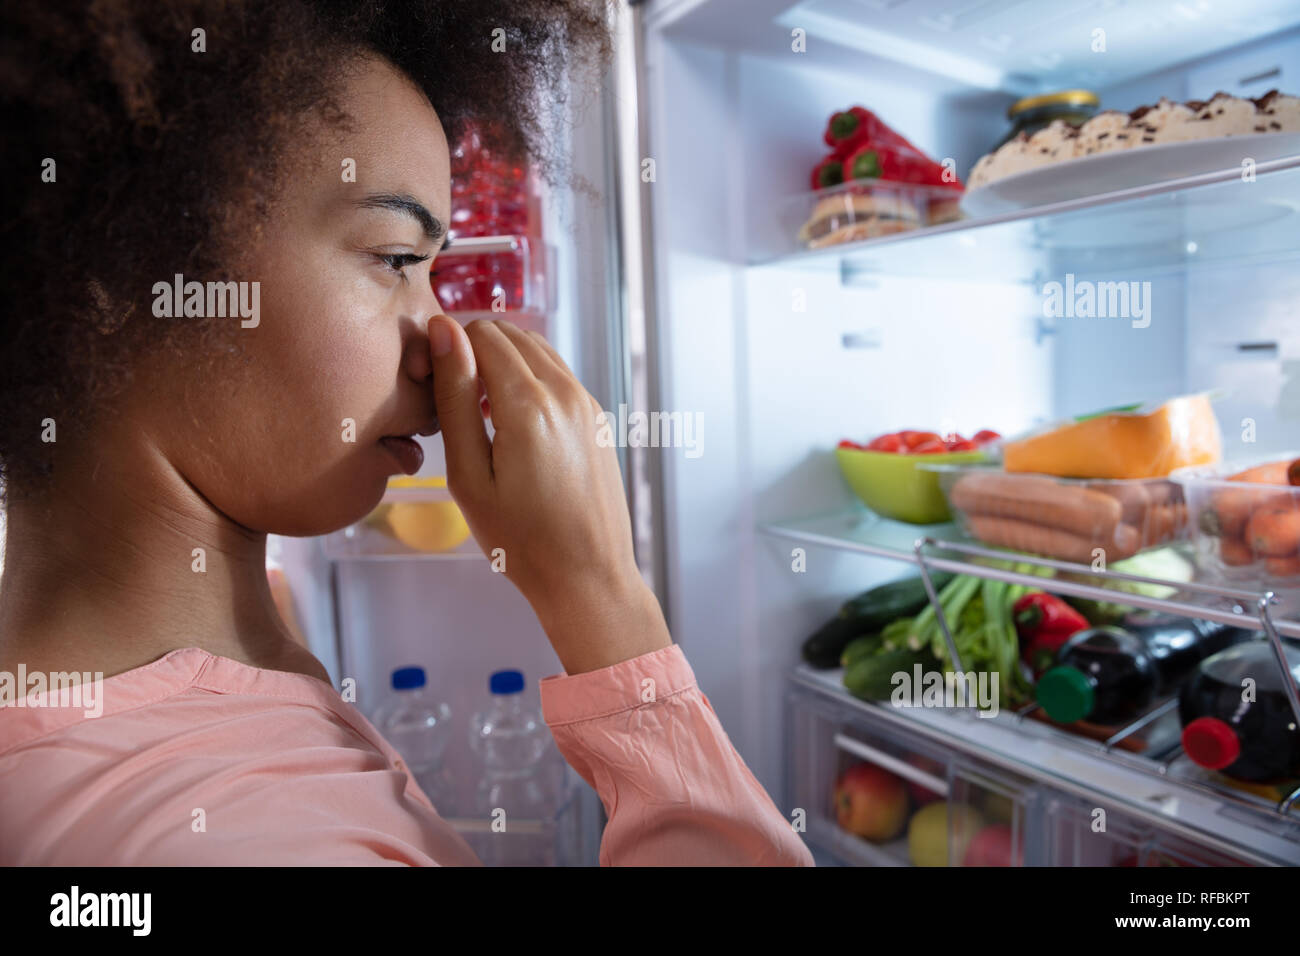 Vue latérale du jeune femme reconnaissant Mauvaise odeur provenant du réfrigérateur, couvrant son nez Banque D'Images